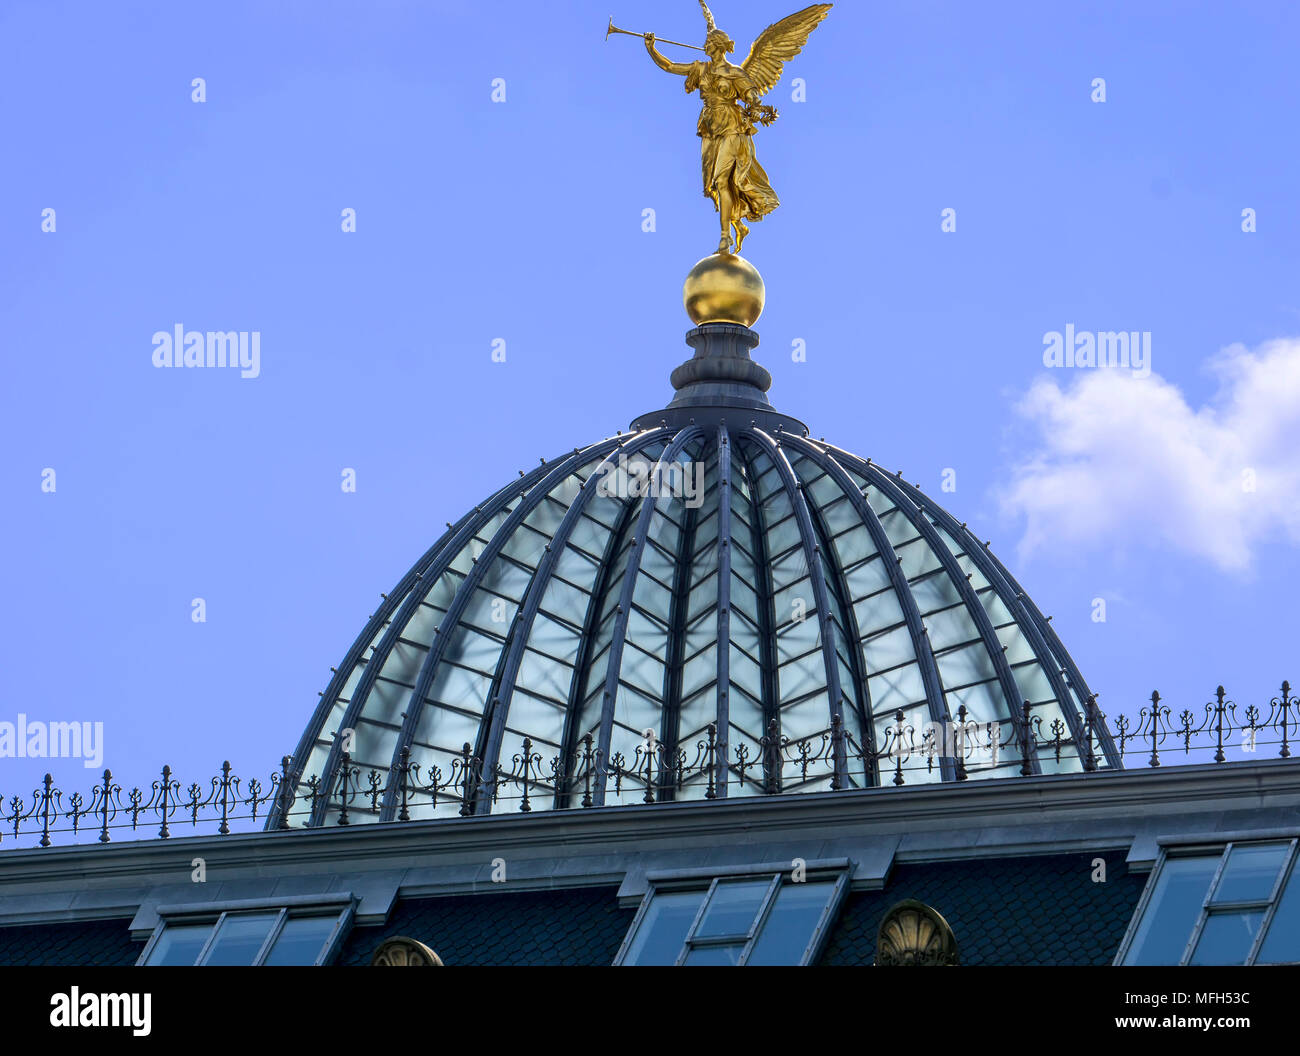 Dôme en verre de l'Académie des beaux-arts de Dresde appelé le "Presse-citron" est surmontée d'une statue de l'ange d'or. Banque D'Images